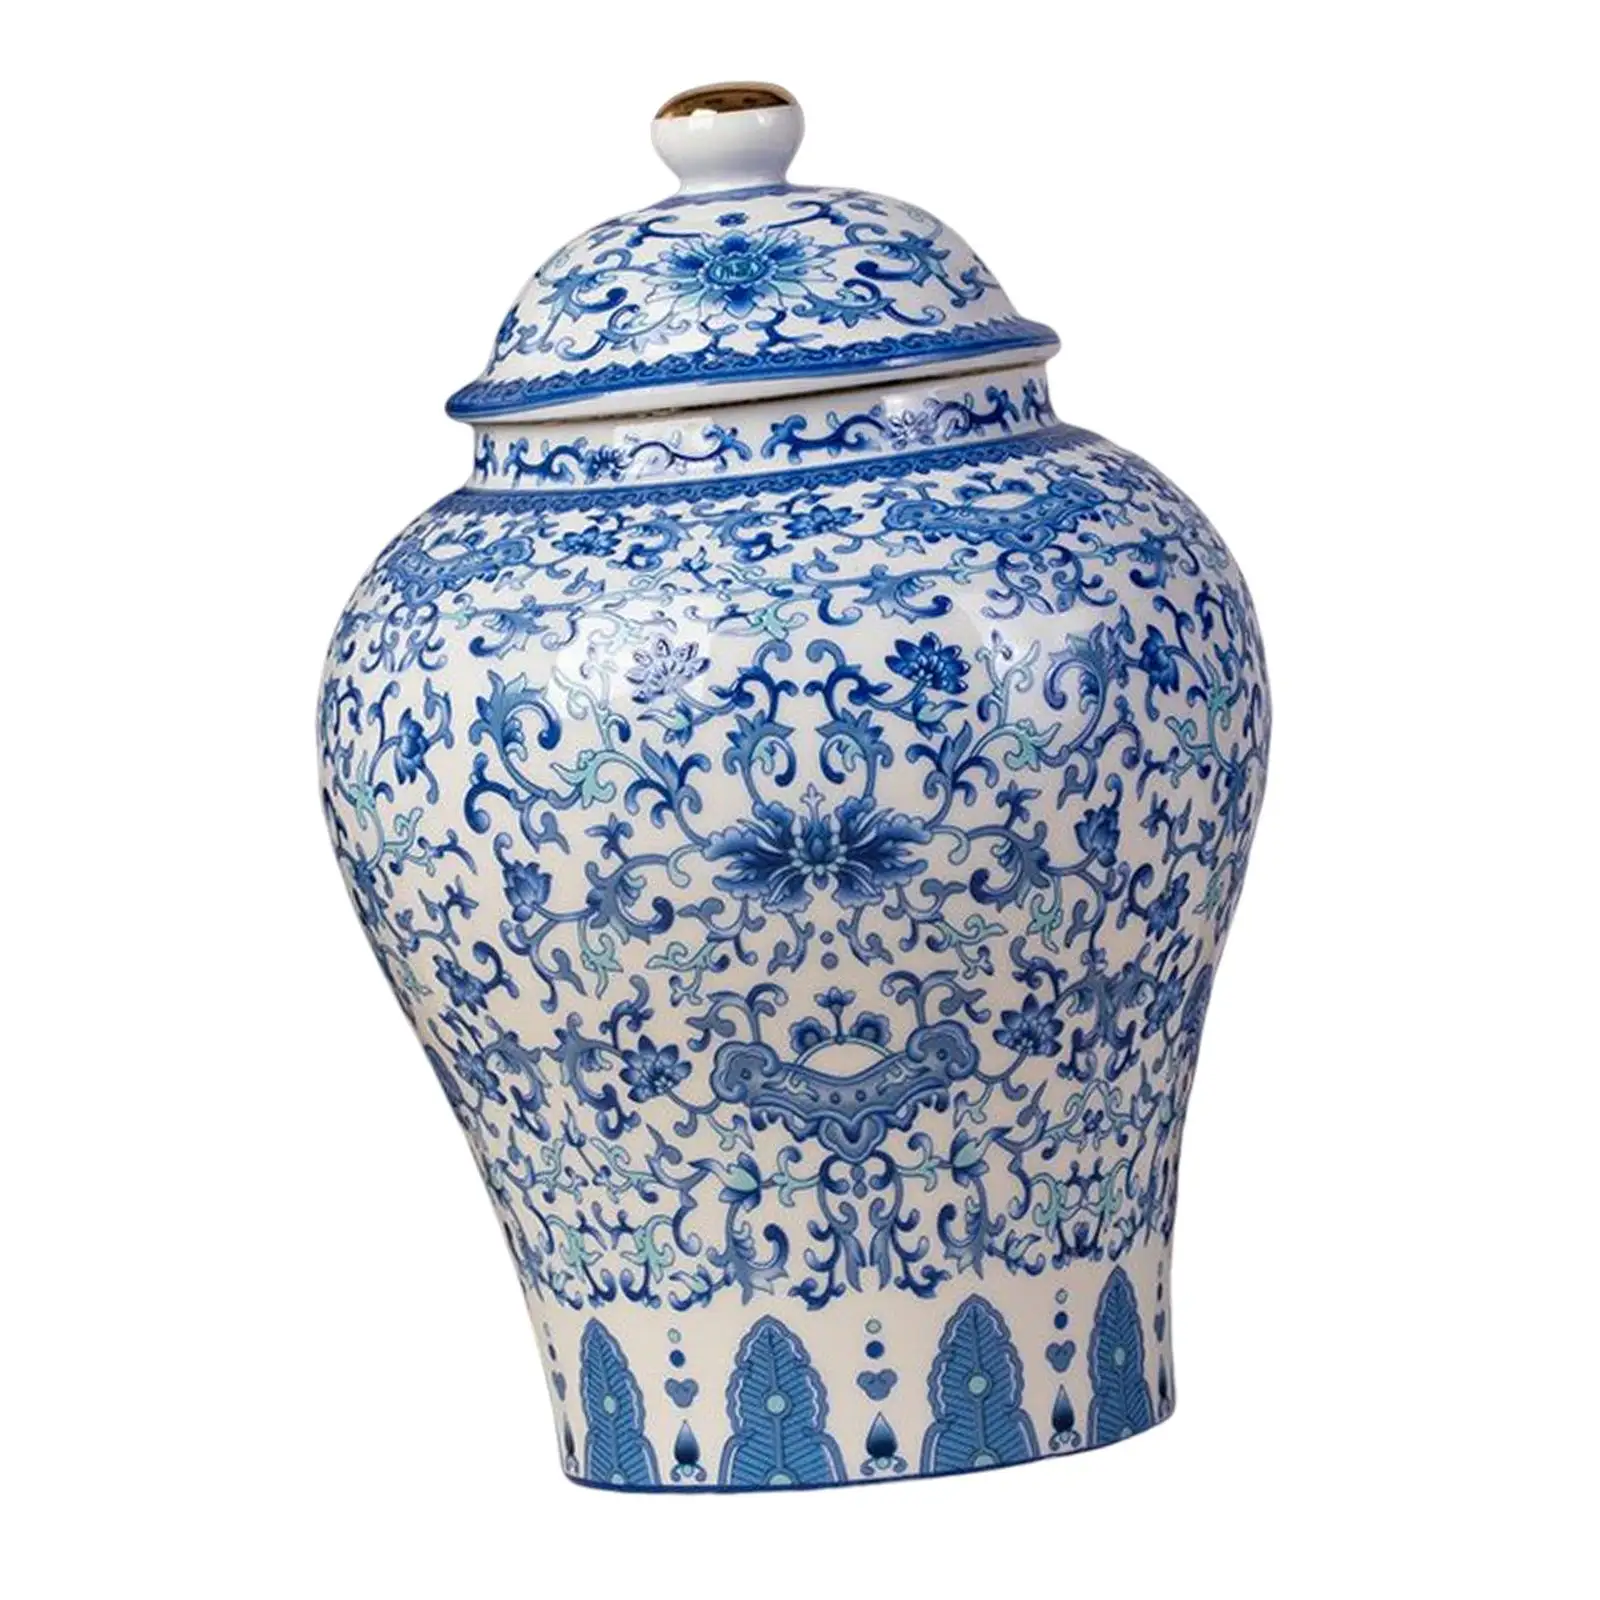 Antique Ceramic Ginger Jar Flower Vase for Kitchen Home Centerpiece Table Decoration